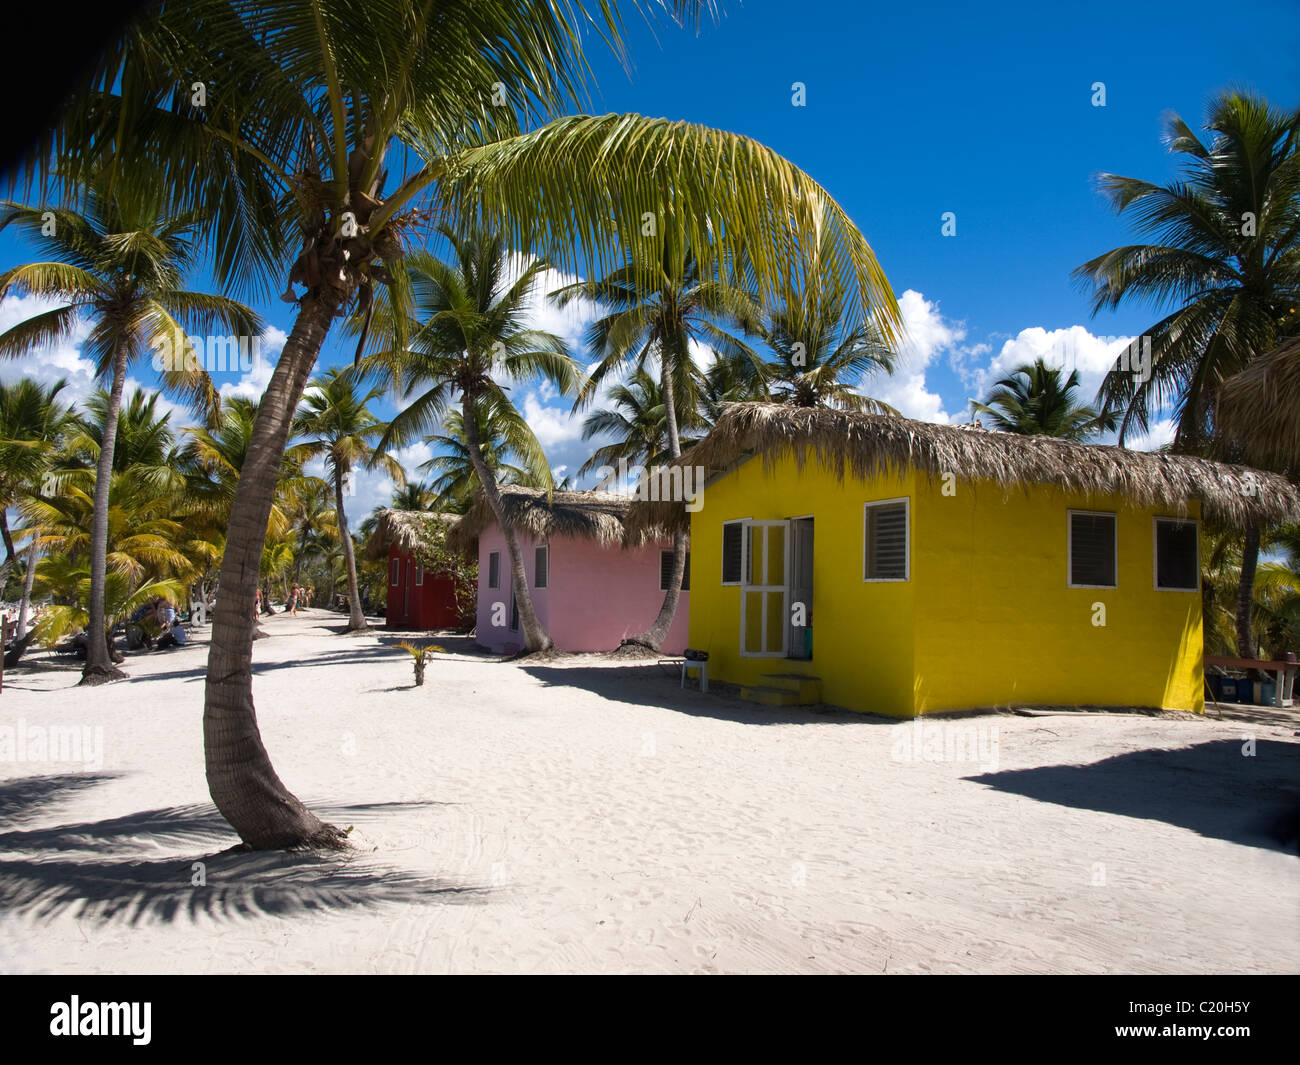 Cabana on Catalina island Caribbean Stock Photo